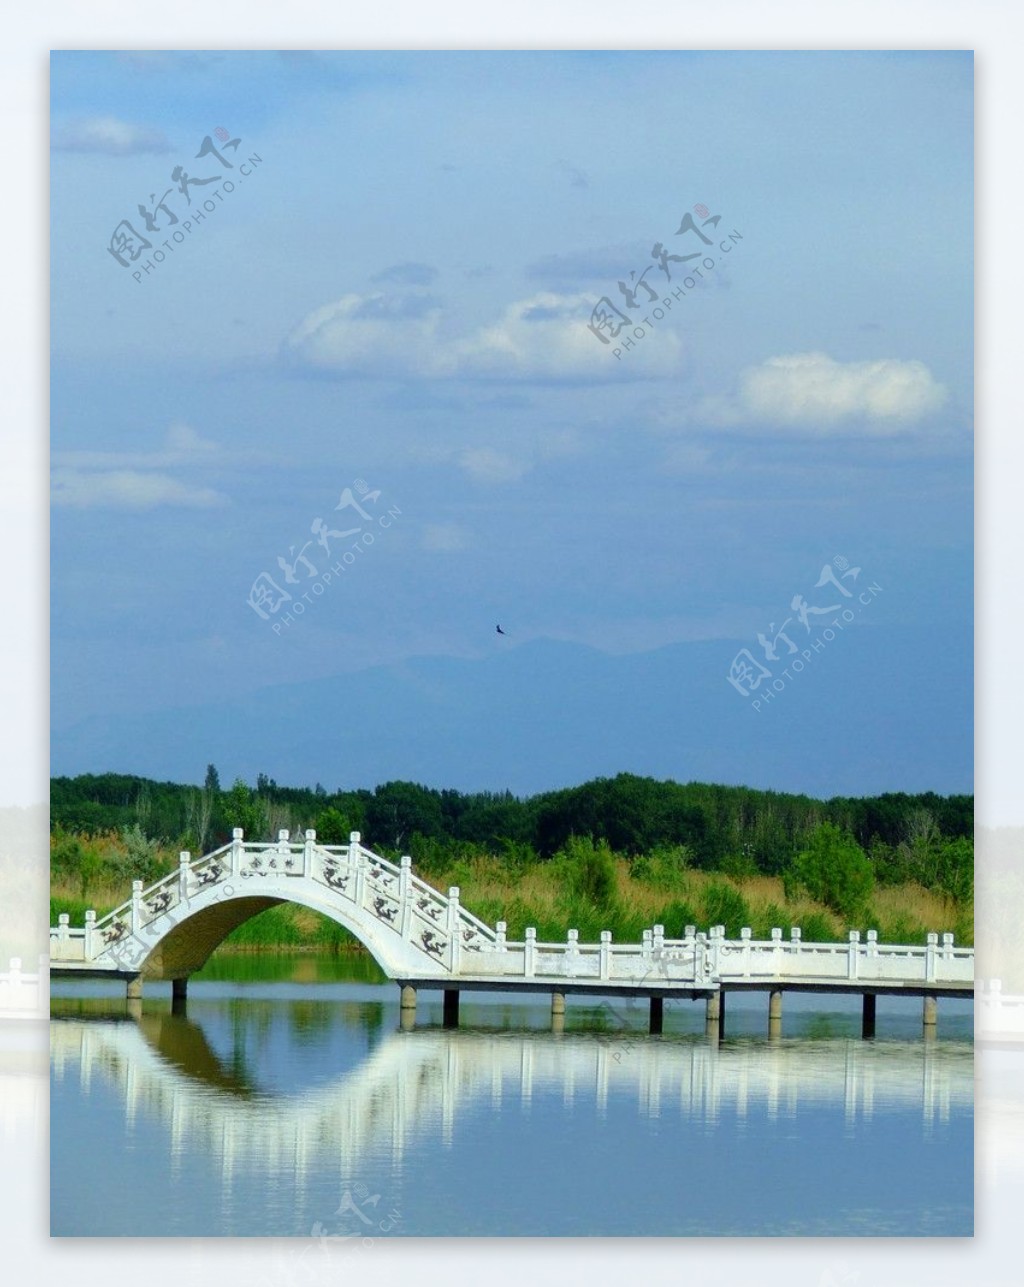 小桥湖水图片